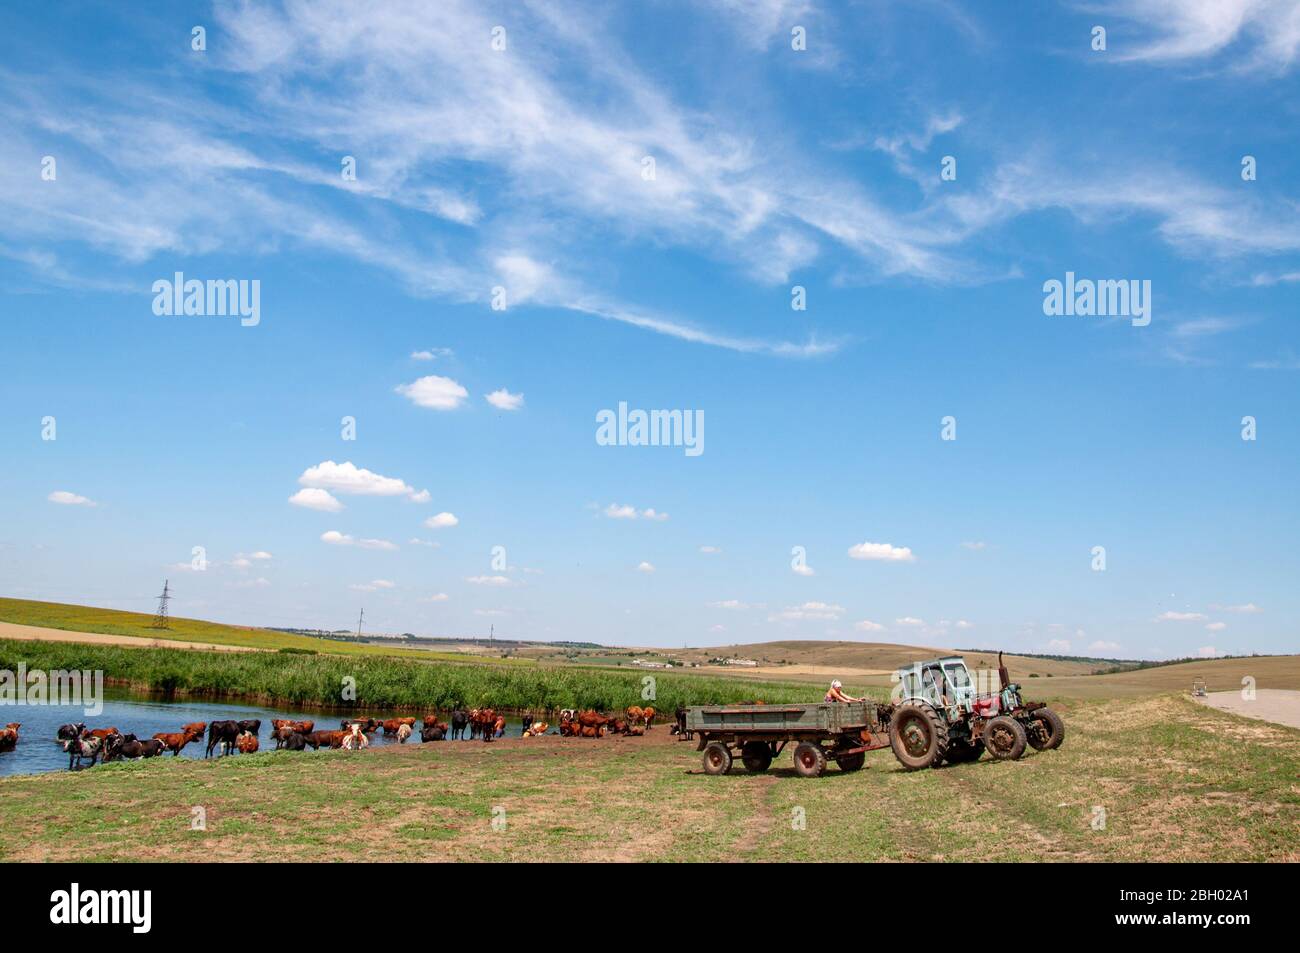 Ländliche Landschaft von landwirtschaftlichen Feld mit alten Traktor und Kuh Herde weiden in der Nähe von Fluss. Sommerlandschaft mit hohem blauen Himmel in der Landschaft der Ukraine. Stockfoto